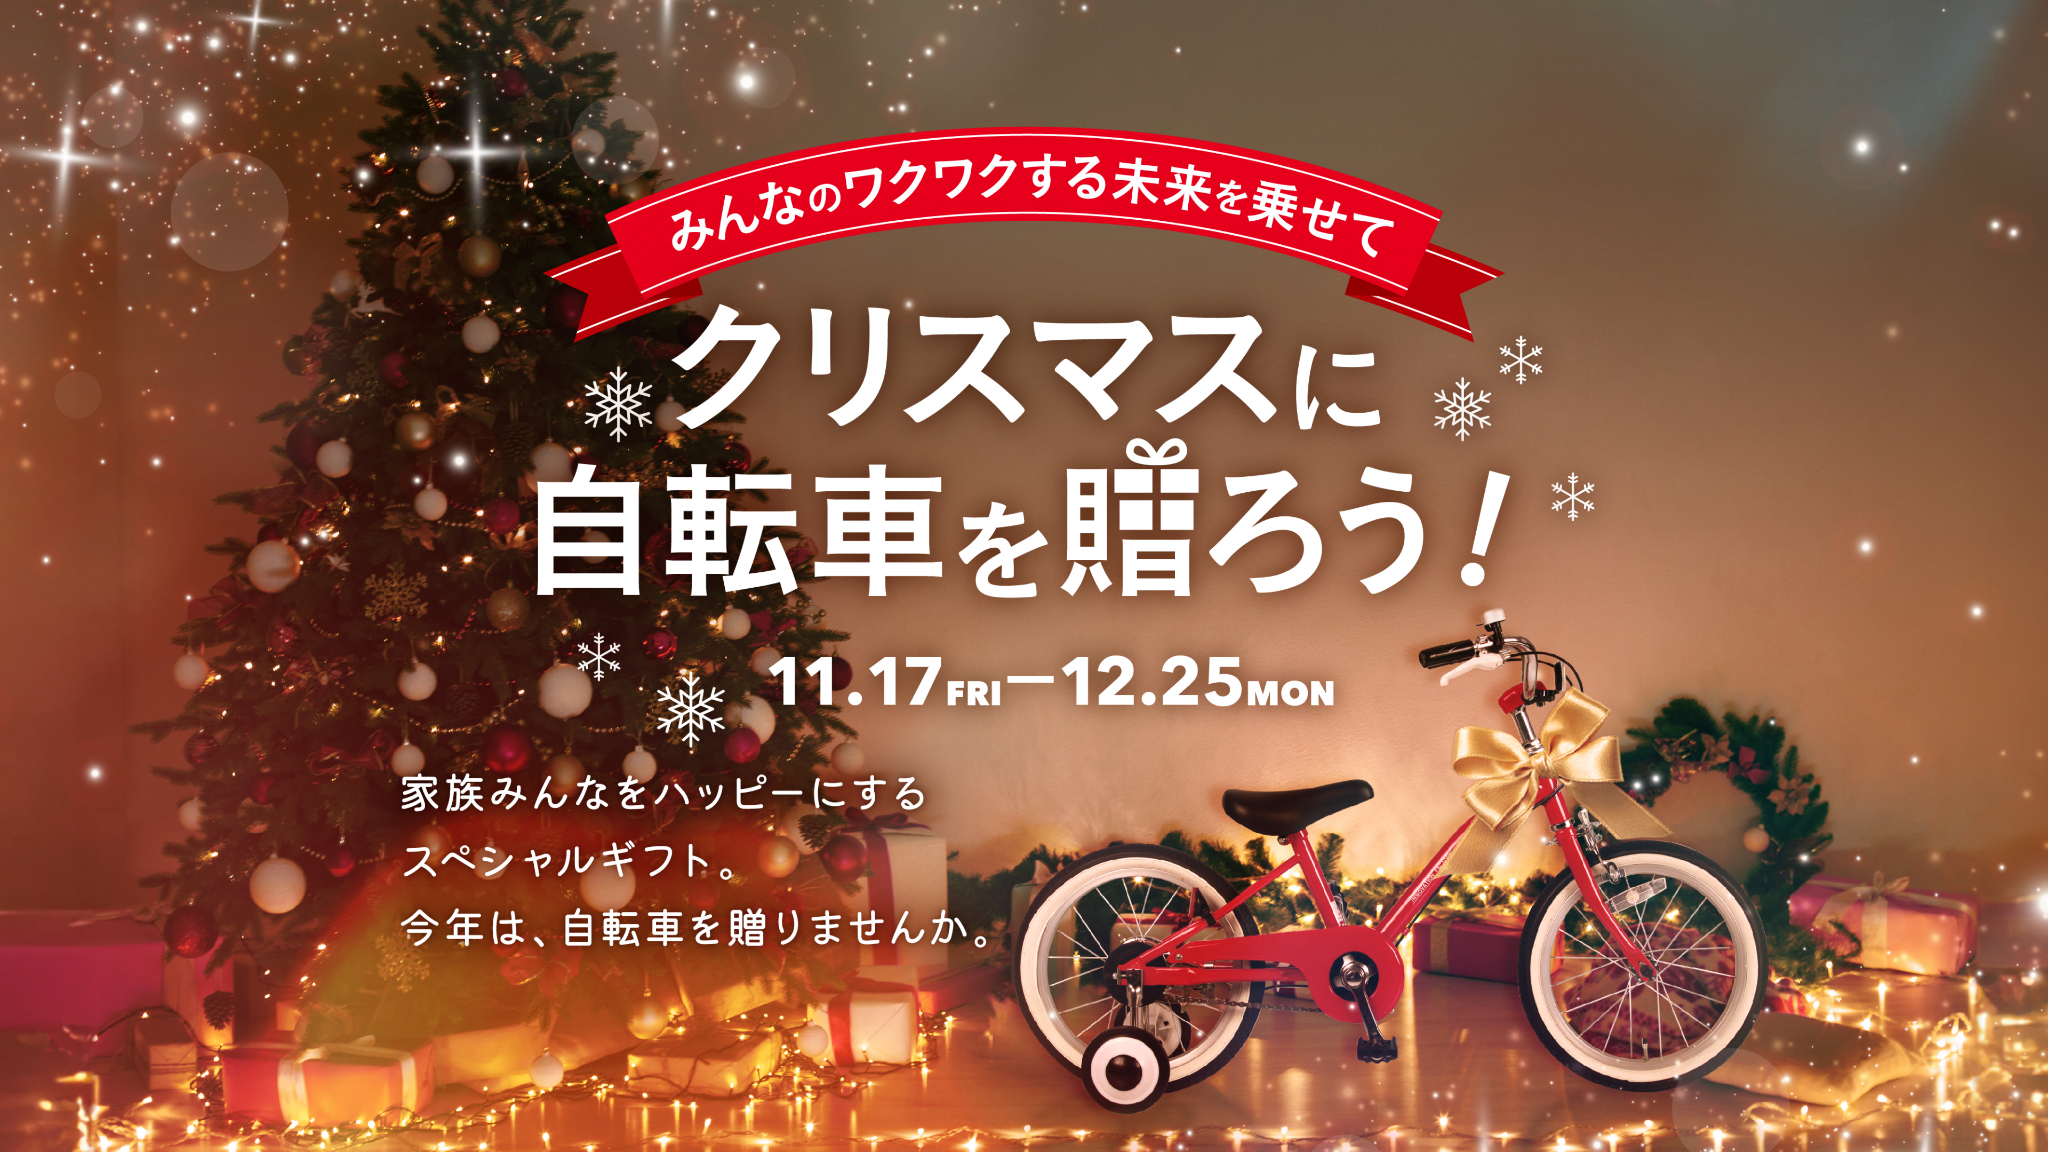 みんなのワクワクする未来を乗せて クリスマスに自転車を贈ろう! 11.17 FRI-12.25 MON 家族みんなをハッピーにするスペシャルギフト。今年は、自転車を贈りませんか。